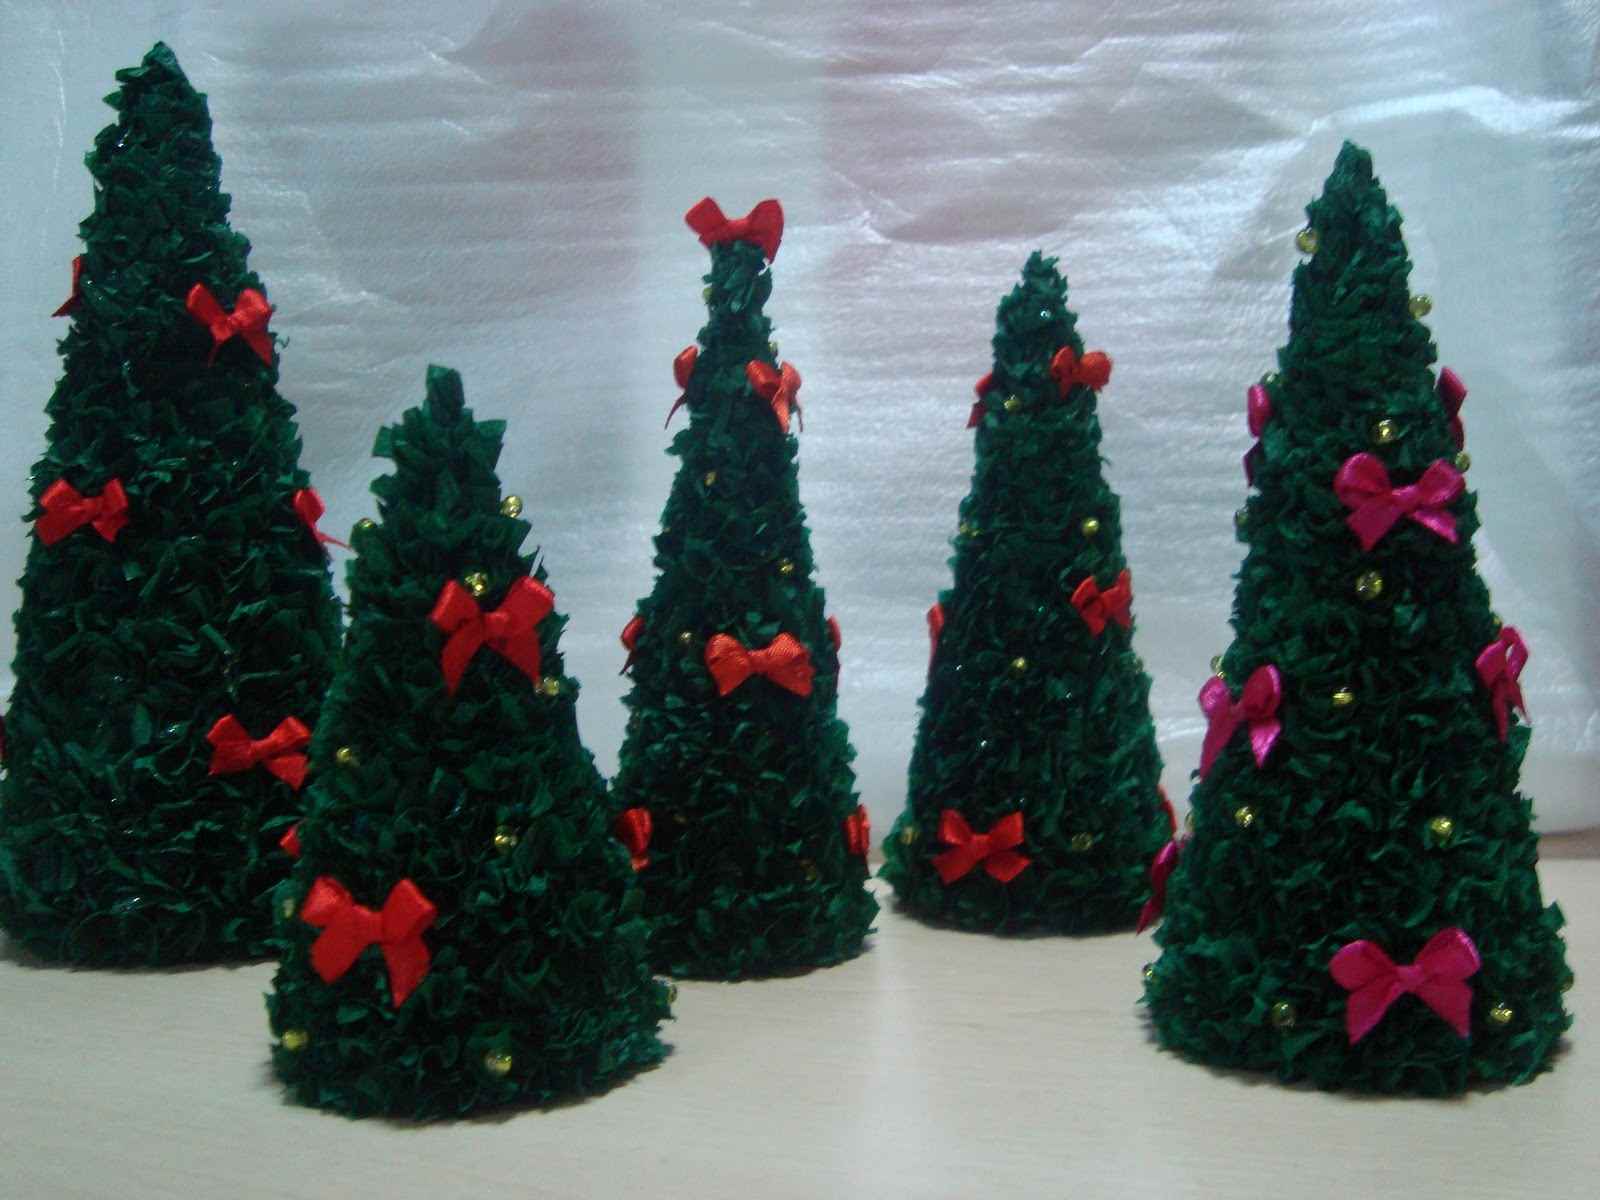 příklad vytvoření neobvyklého vánočního stromu z papíru